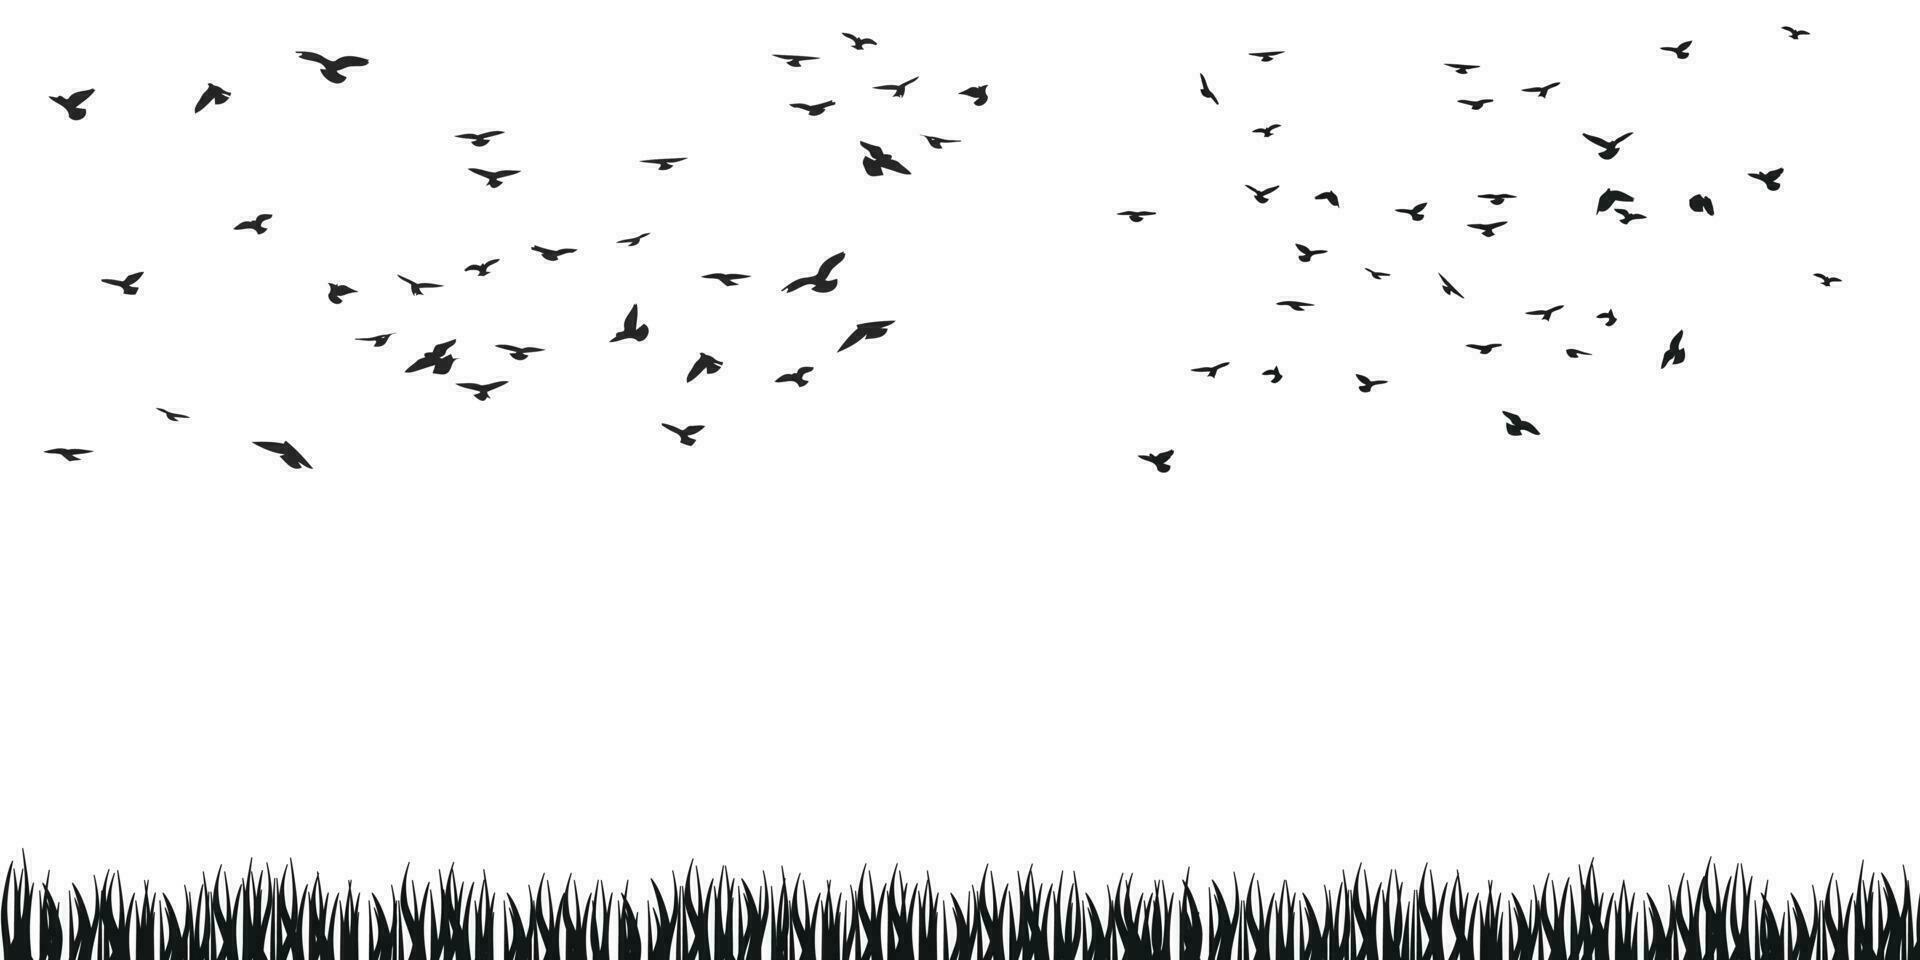 une troupeau de en volant des oiseaux silhouette, vol dans différent positions. flotter, planant, atterrissage, en volant, battement. isolé vecteur